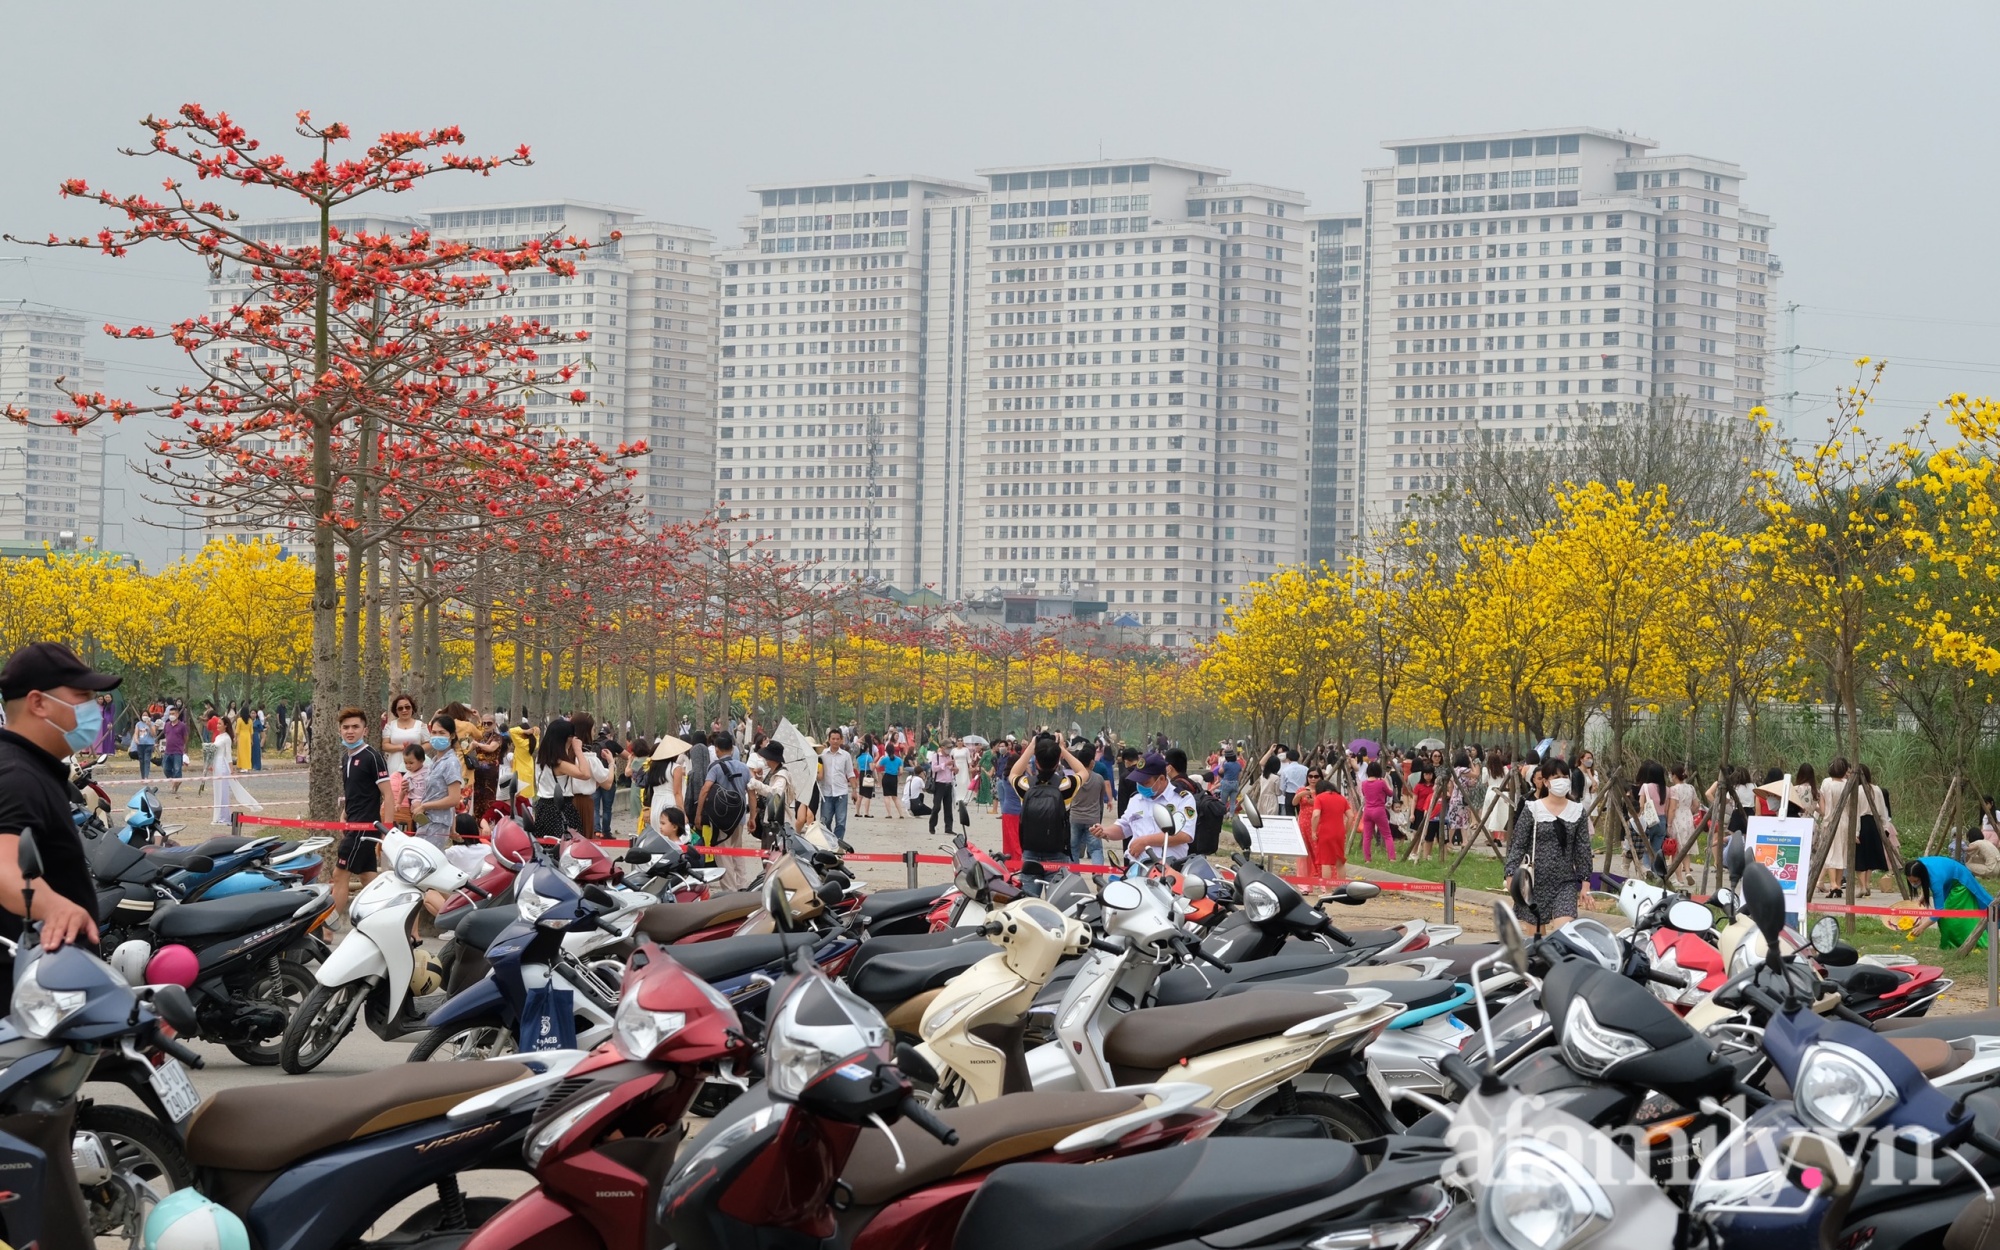 Hà Nội: Hàng nghìn người đổ xô đi chụp ảnh ở đường hoa phong linh, chỗ để xe &quot;thất thủ&quot; - cảnh giác bảo vệ tài sản - Ảnh 3.